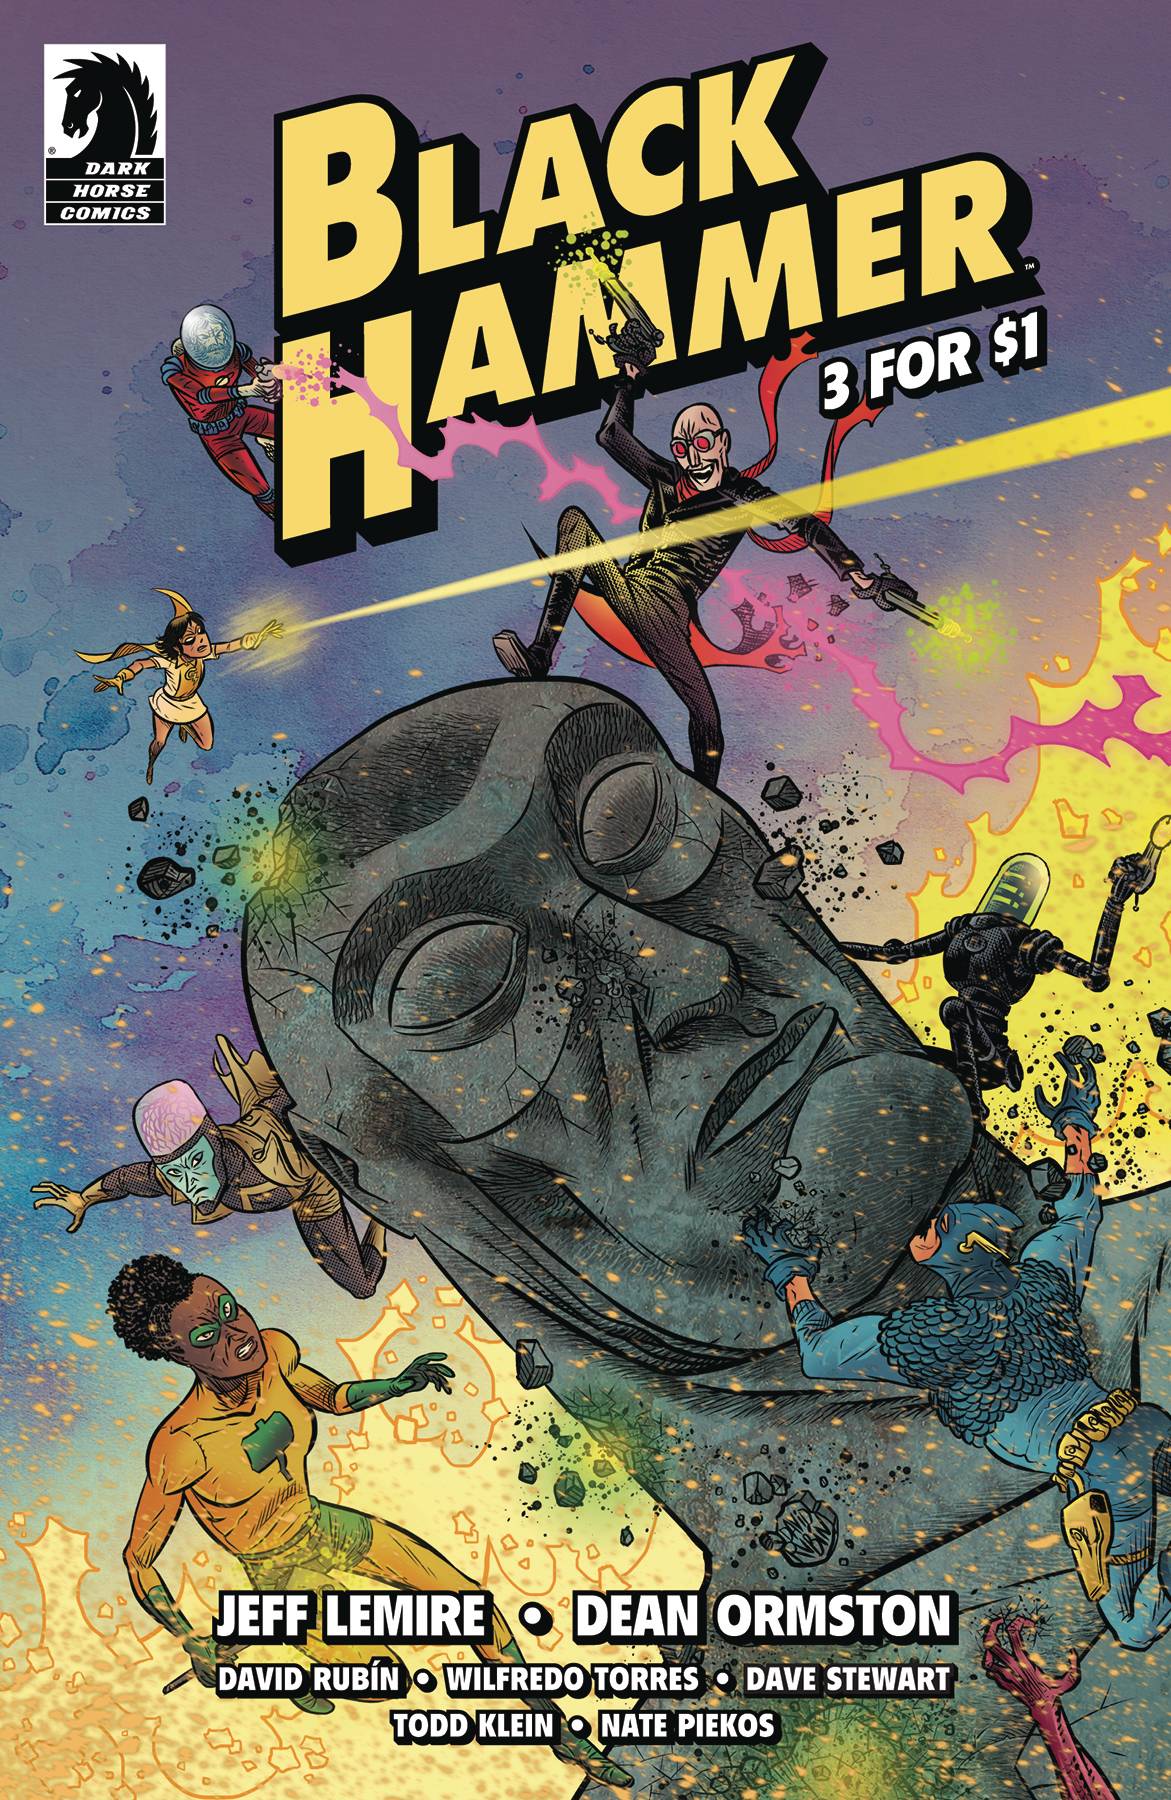 Black Hammer 3 For $1 #1 (2019)